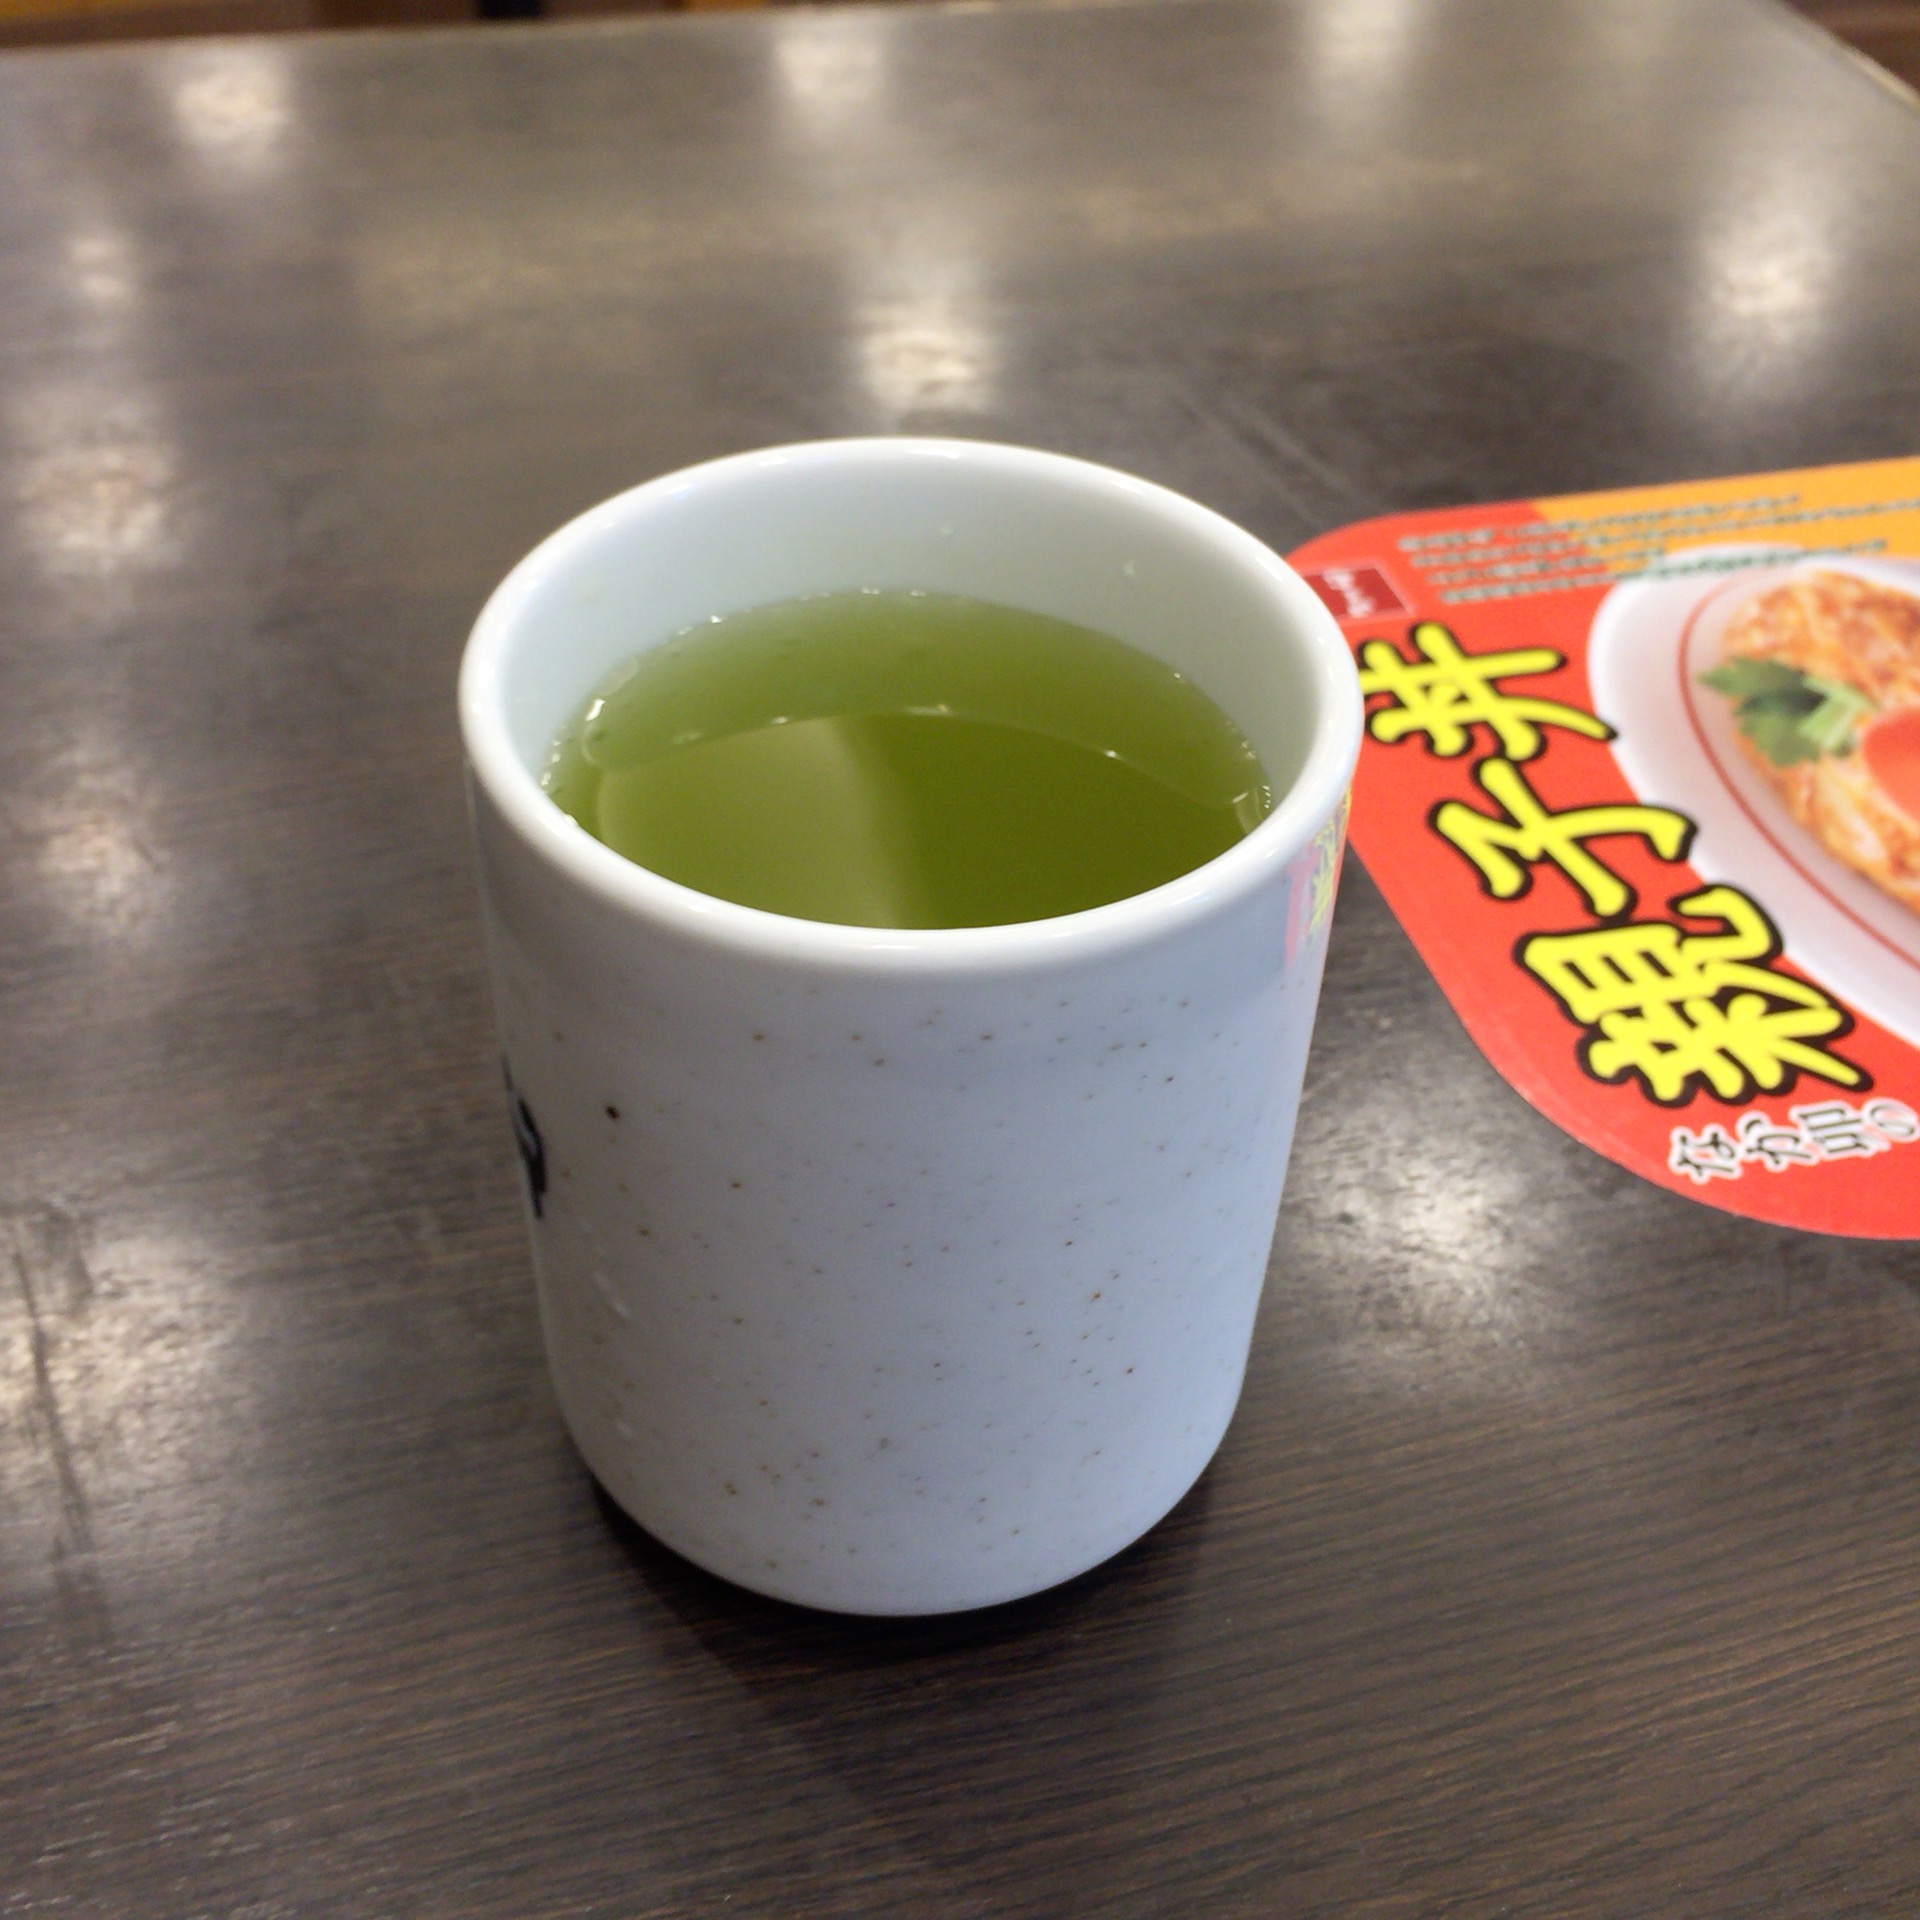 席につくと店員さんが、やけに緑のお茶をくれます